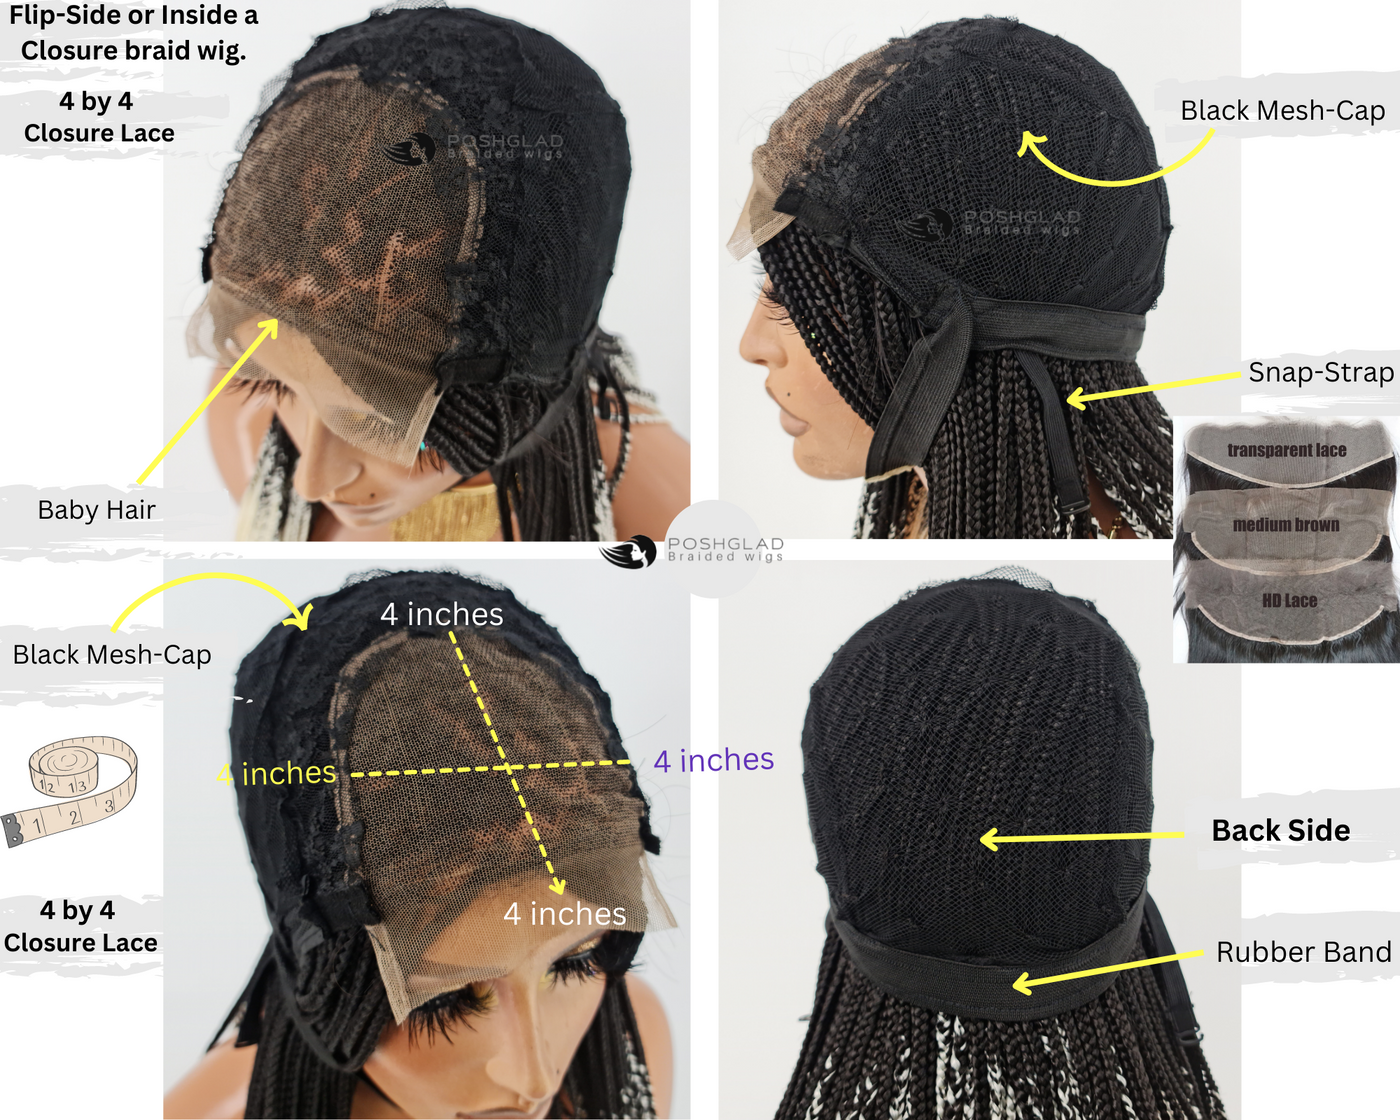 Box Braid Wig - Ife (Ready To Ship) Closure Poshglad Braided Wigs Box Braid Wigs